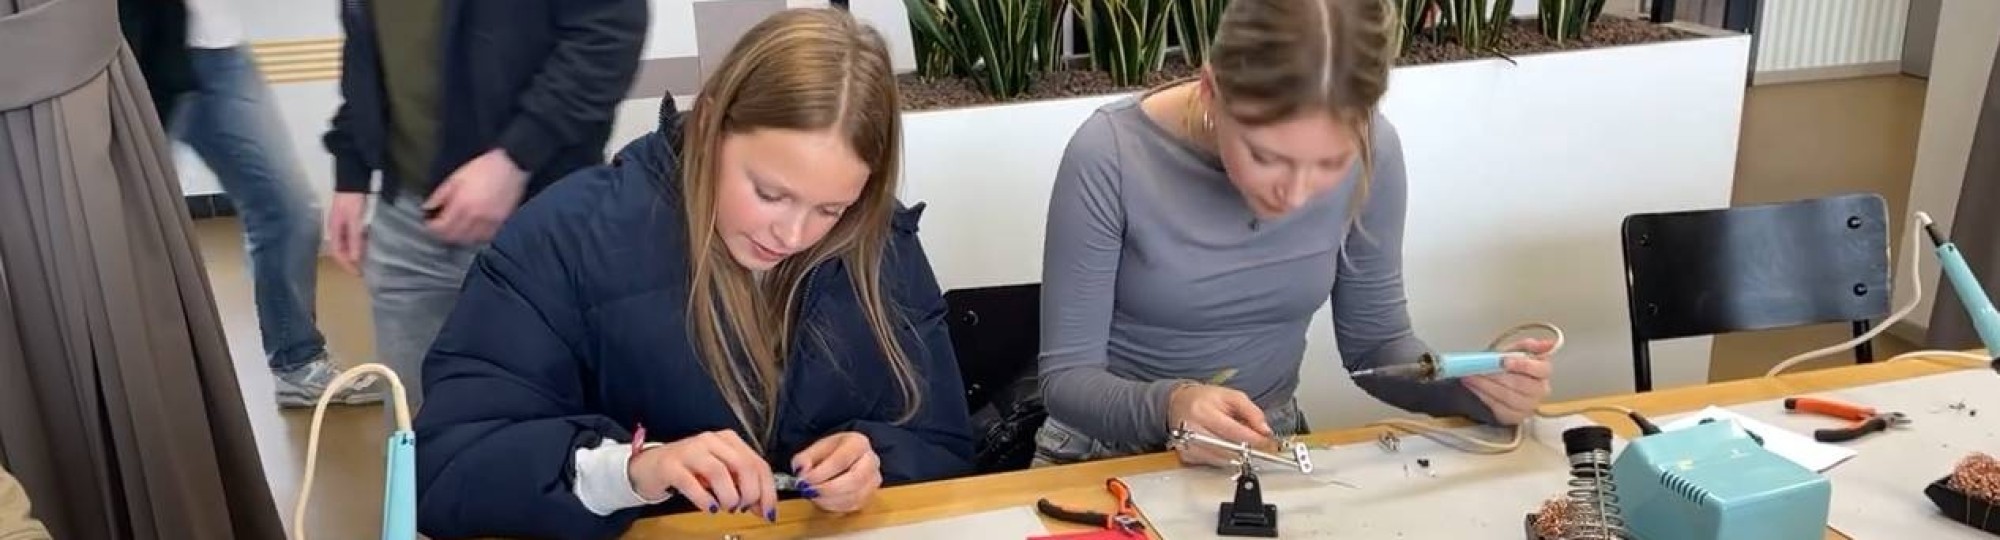 Meiden leren solderen op de Girls' Day bij de HAN in Arnhem